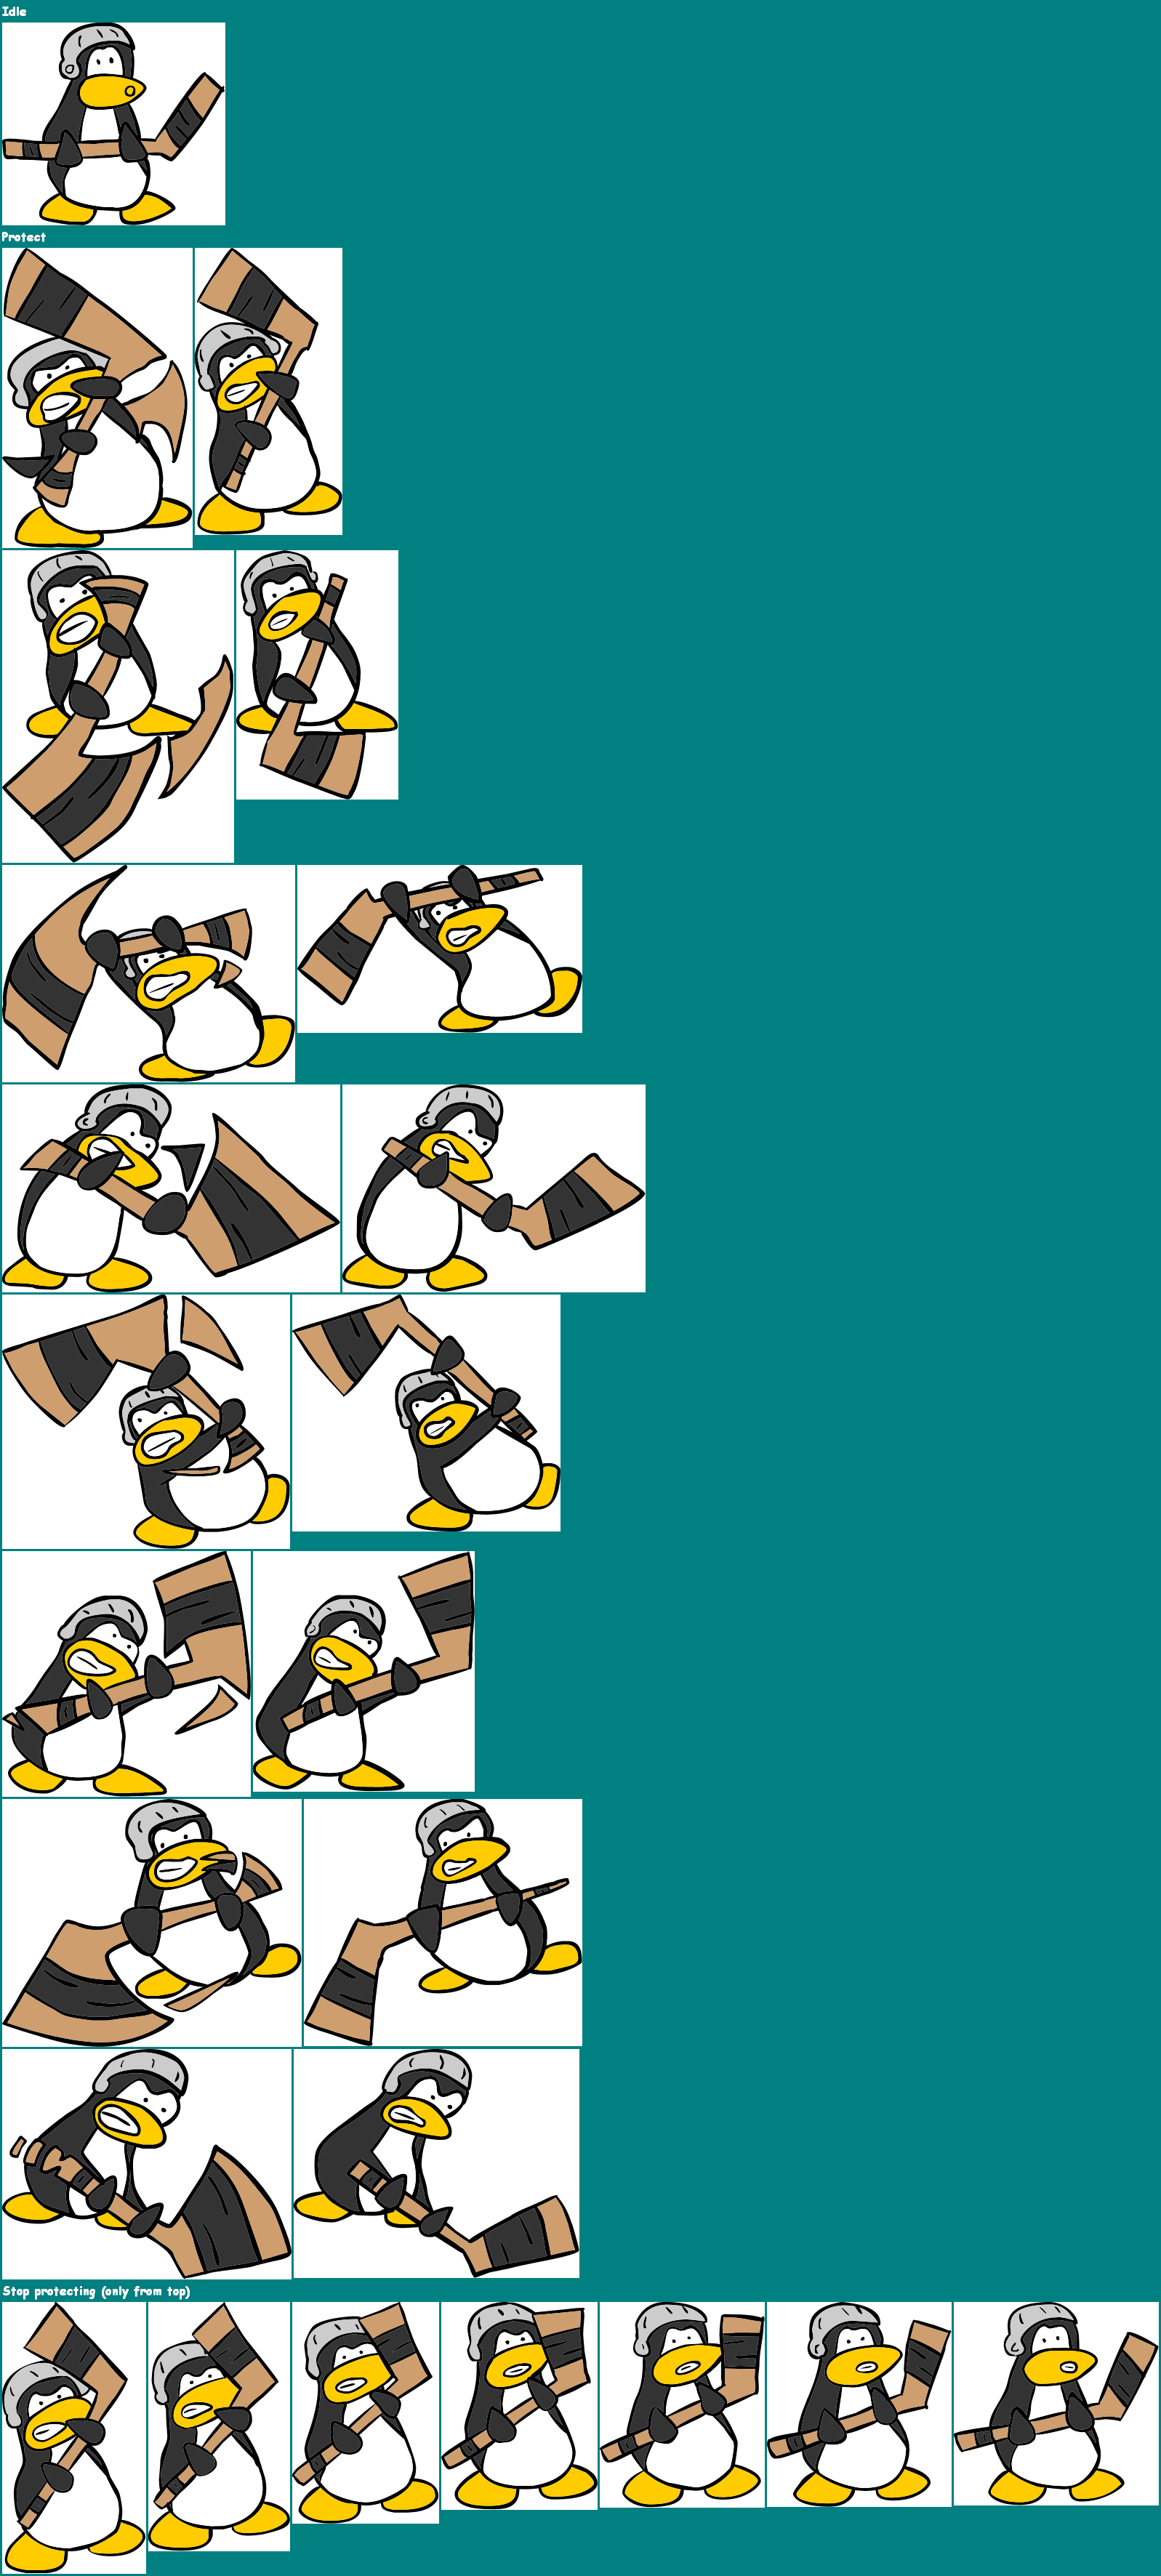 Club Penguin Beta Team Minigames - Black Penguin